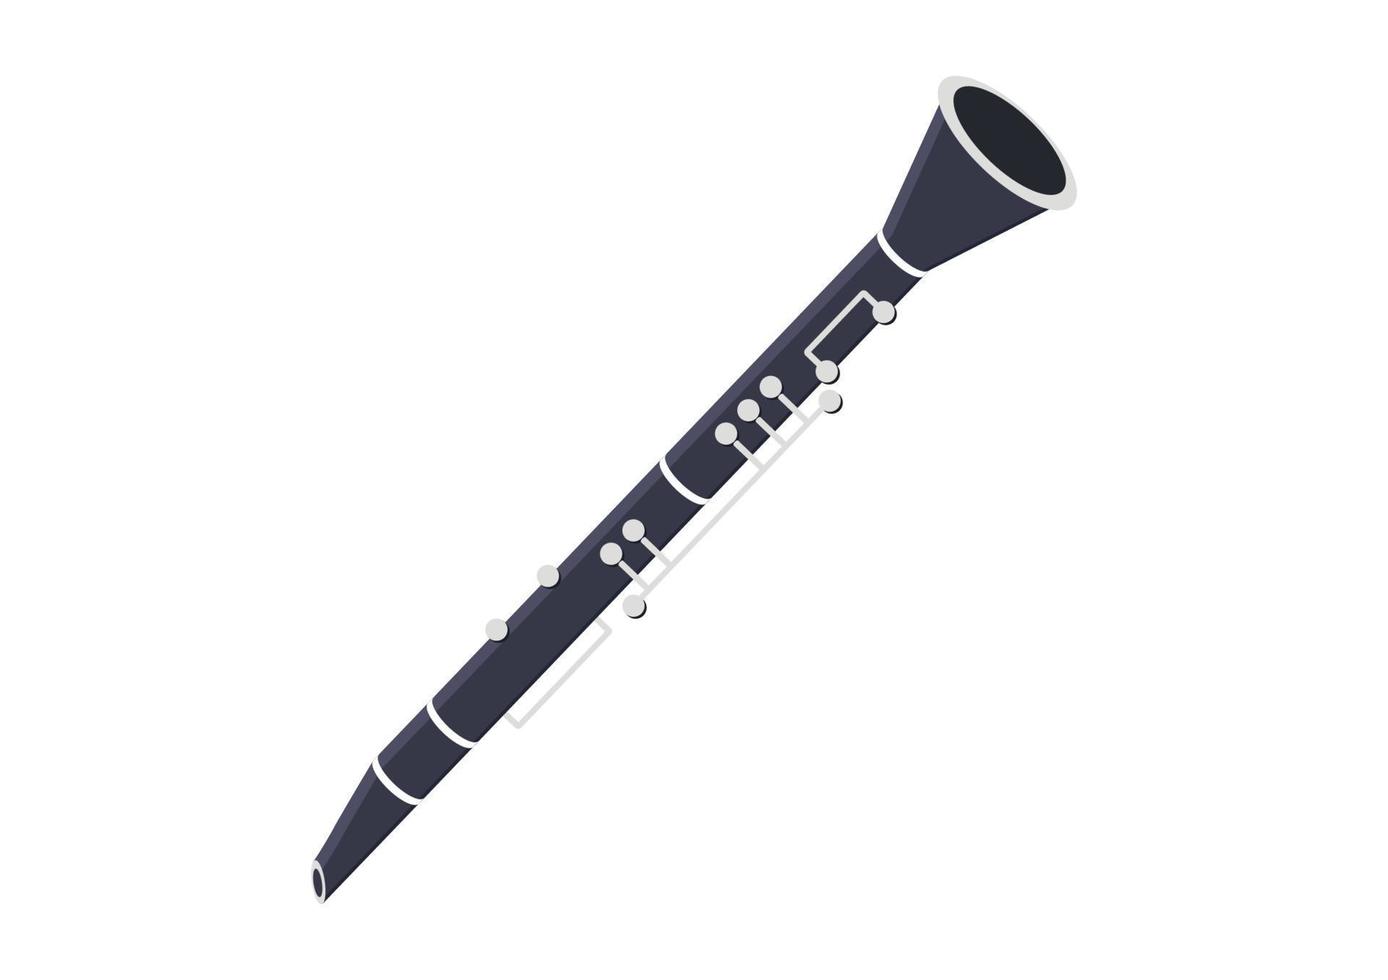 desenho vetorial de clarinete. ilustração em vetor estilo plano clarinete isolada no fundo branco. instrumento de música de sopro clássico.